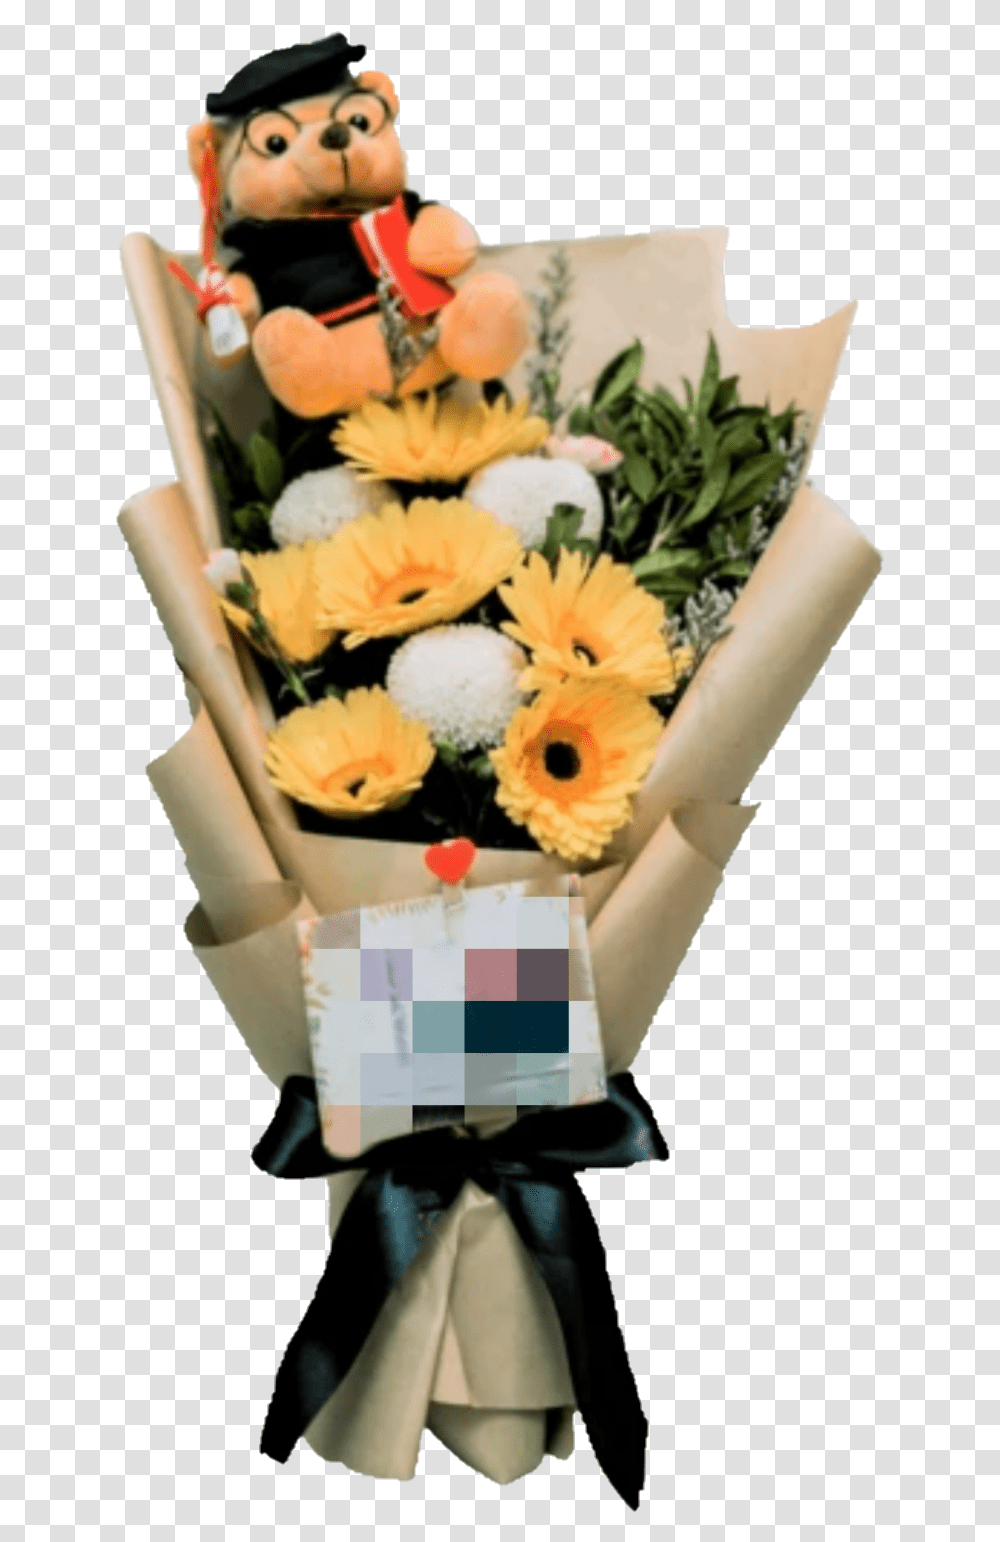 Graduation Bouquet With Bear Graduation Flower Bouquet, Plant, Flower Arrangement, Blossom, Toy Transparent Png